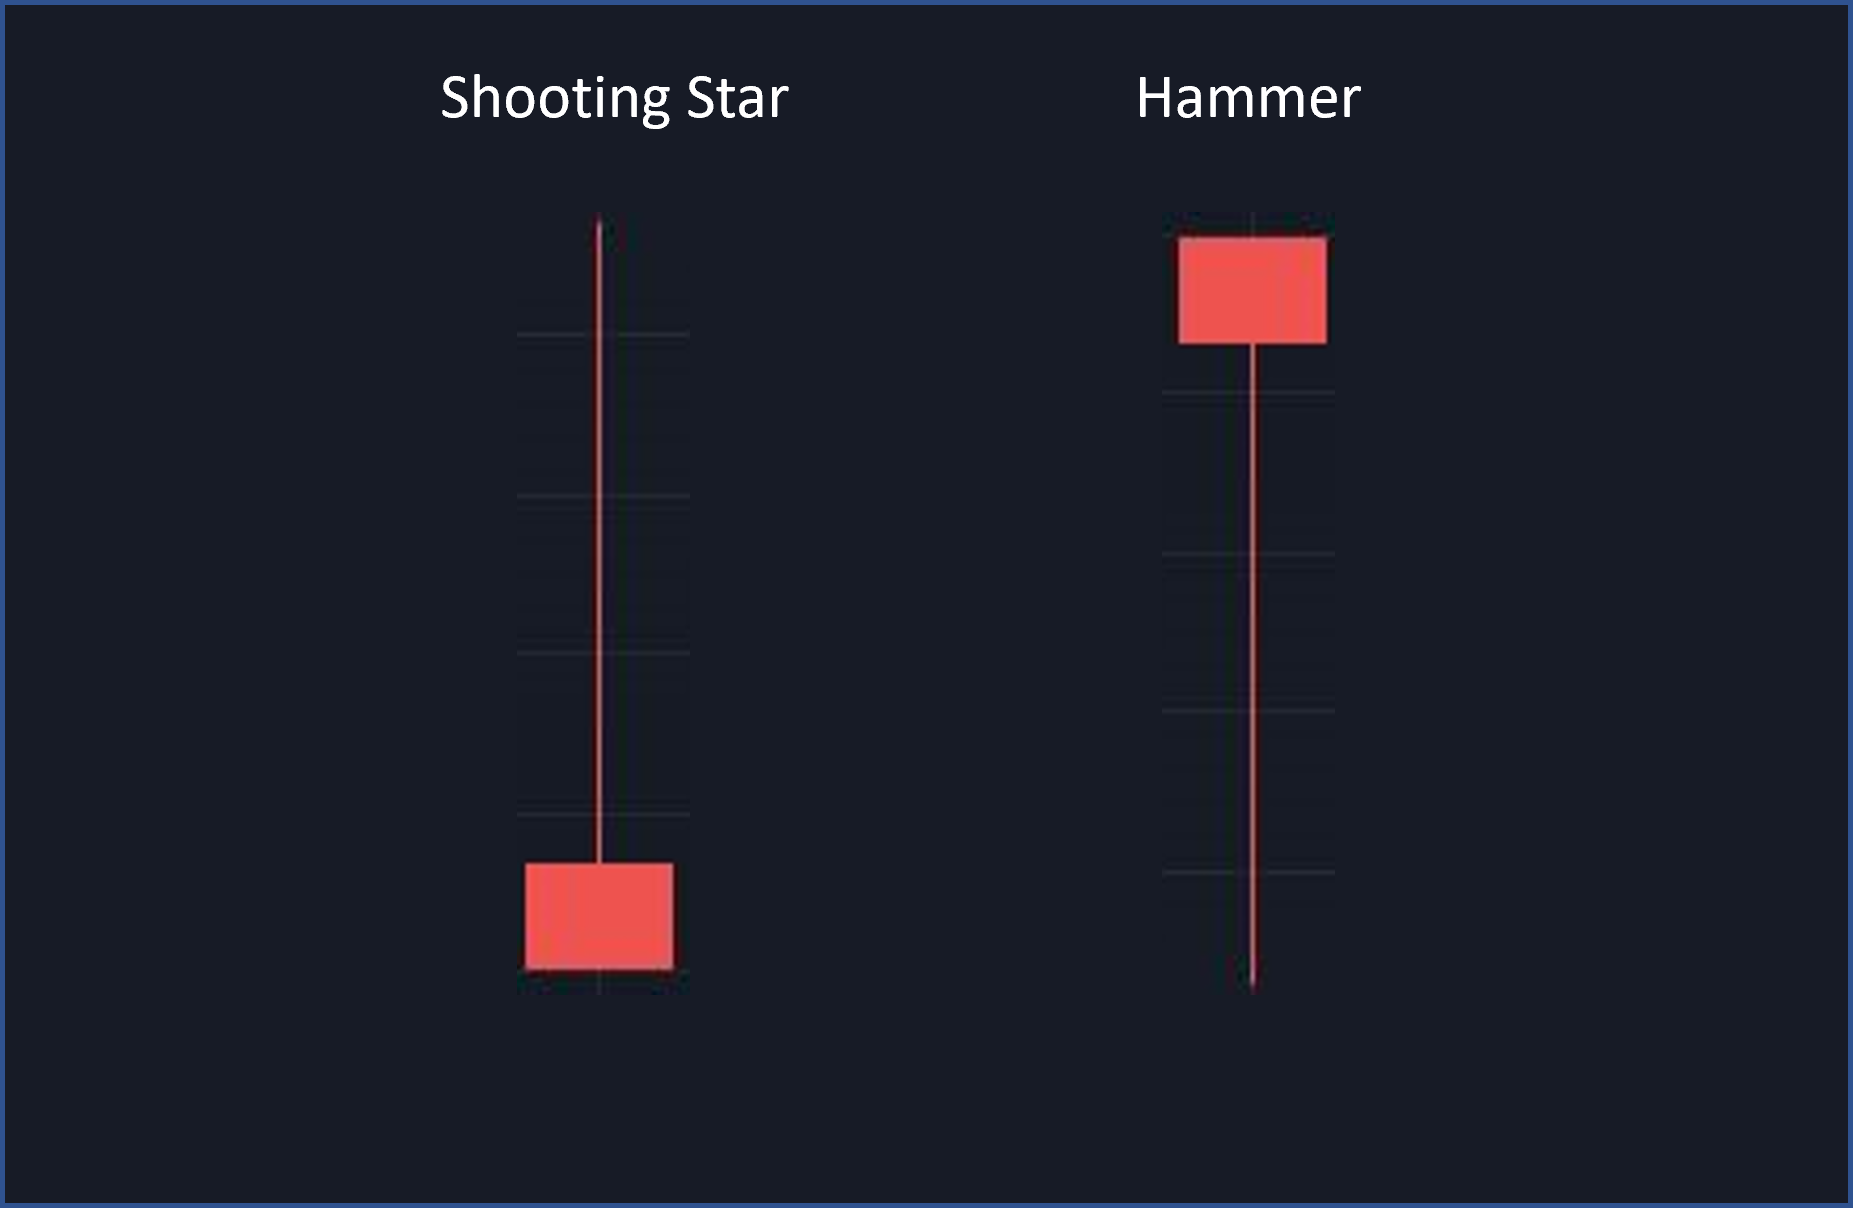 Shooting Star Formation und Hammer Formation im Vergleich